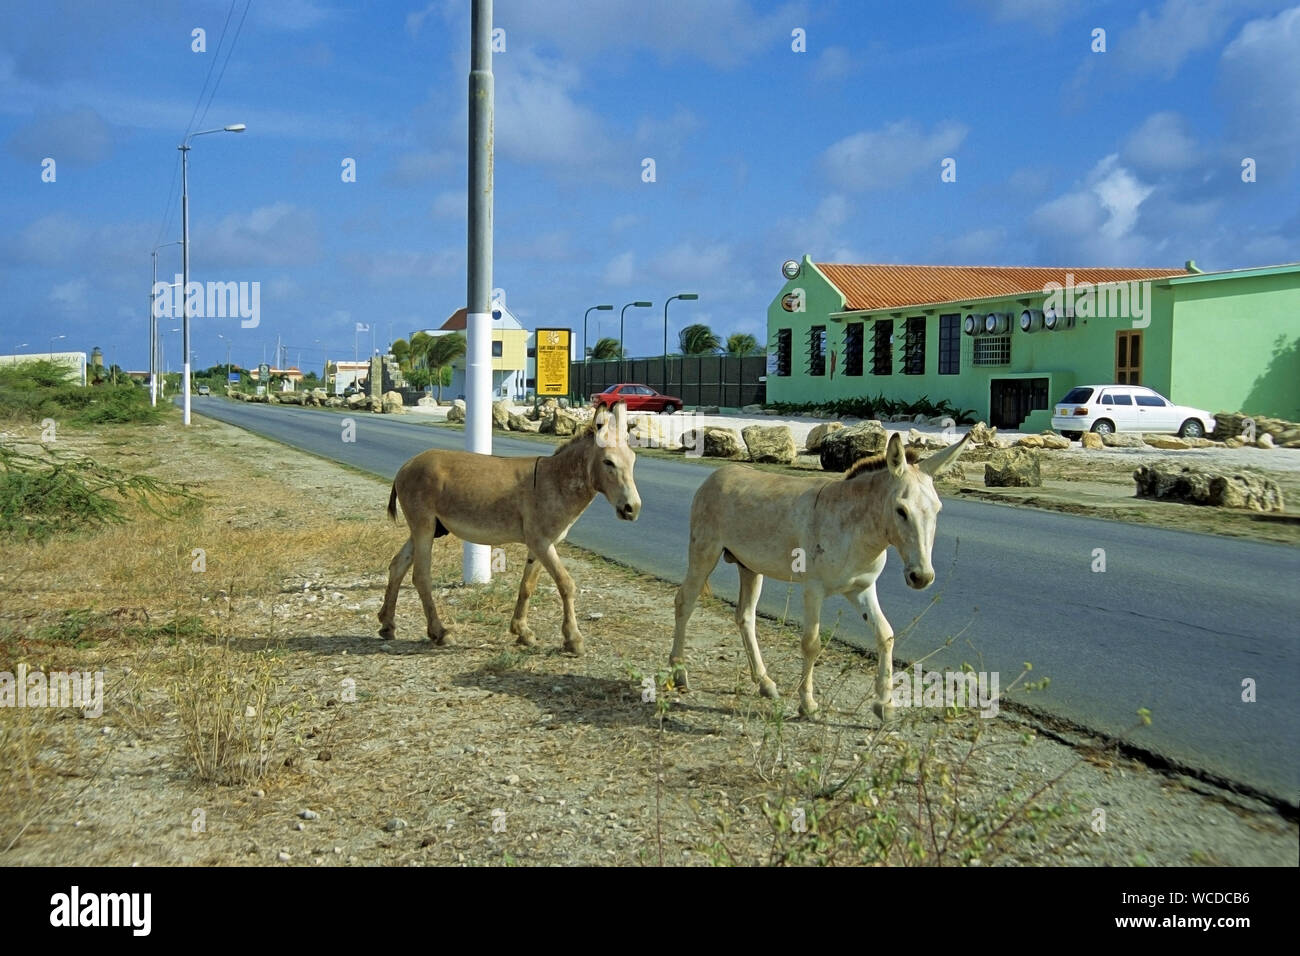 Asino selvaggio, dappertutto per trovare su Bonaire, alcuni posti hanno anche segni di avvertenza in strada, Bonaire, Antille olandesi Foto Stock